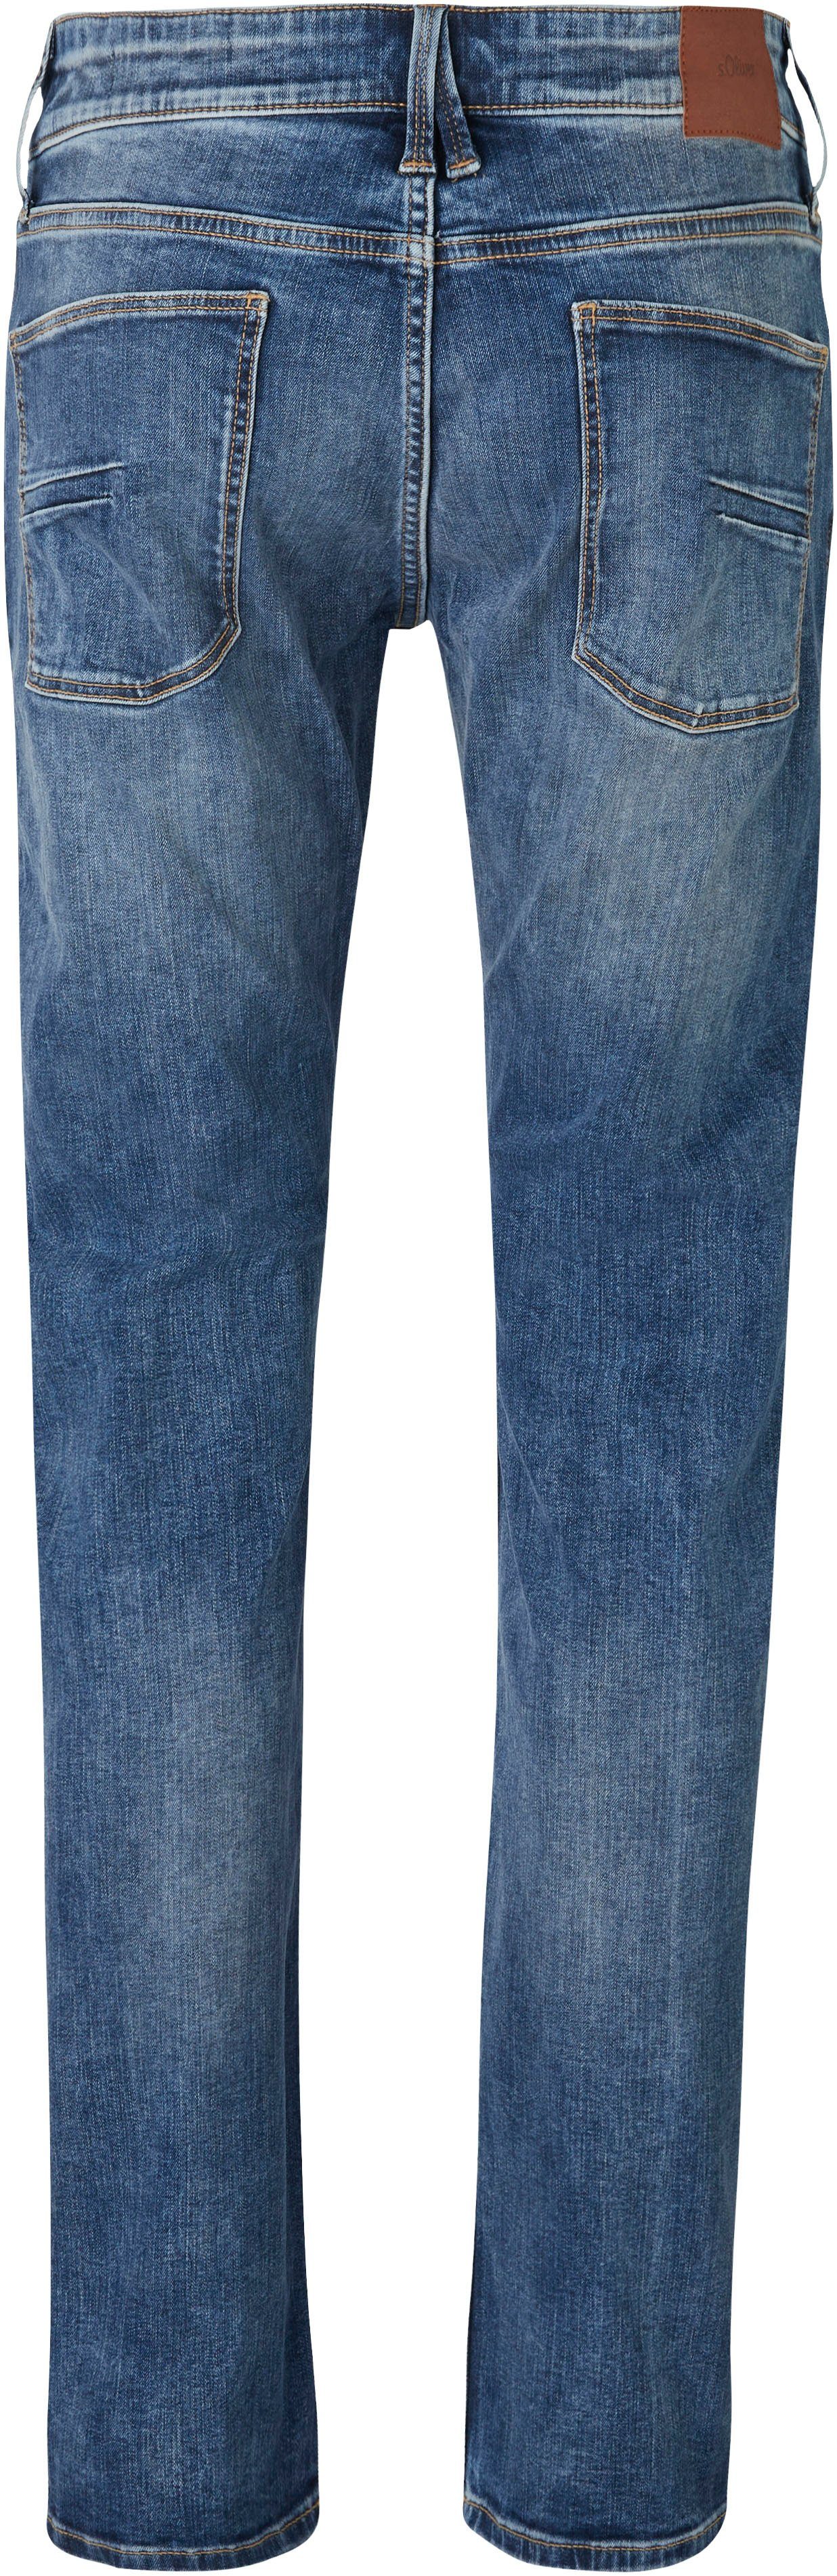 s.Oliver Bequeme Jeans und 32 blue mit Gesäß- Eingrifftaschen mid